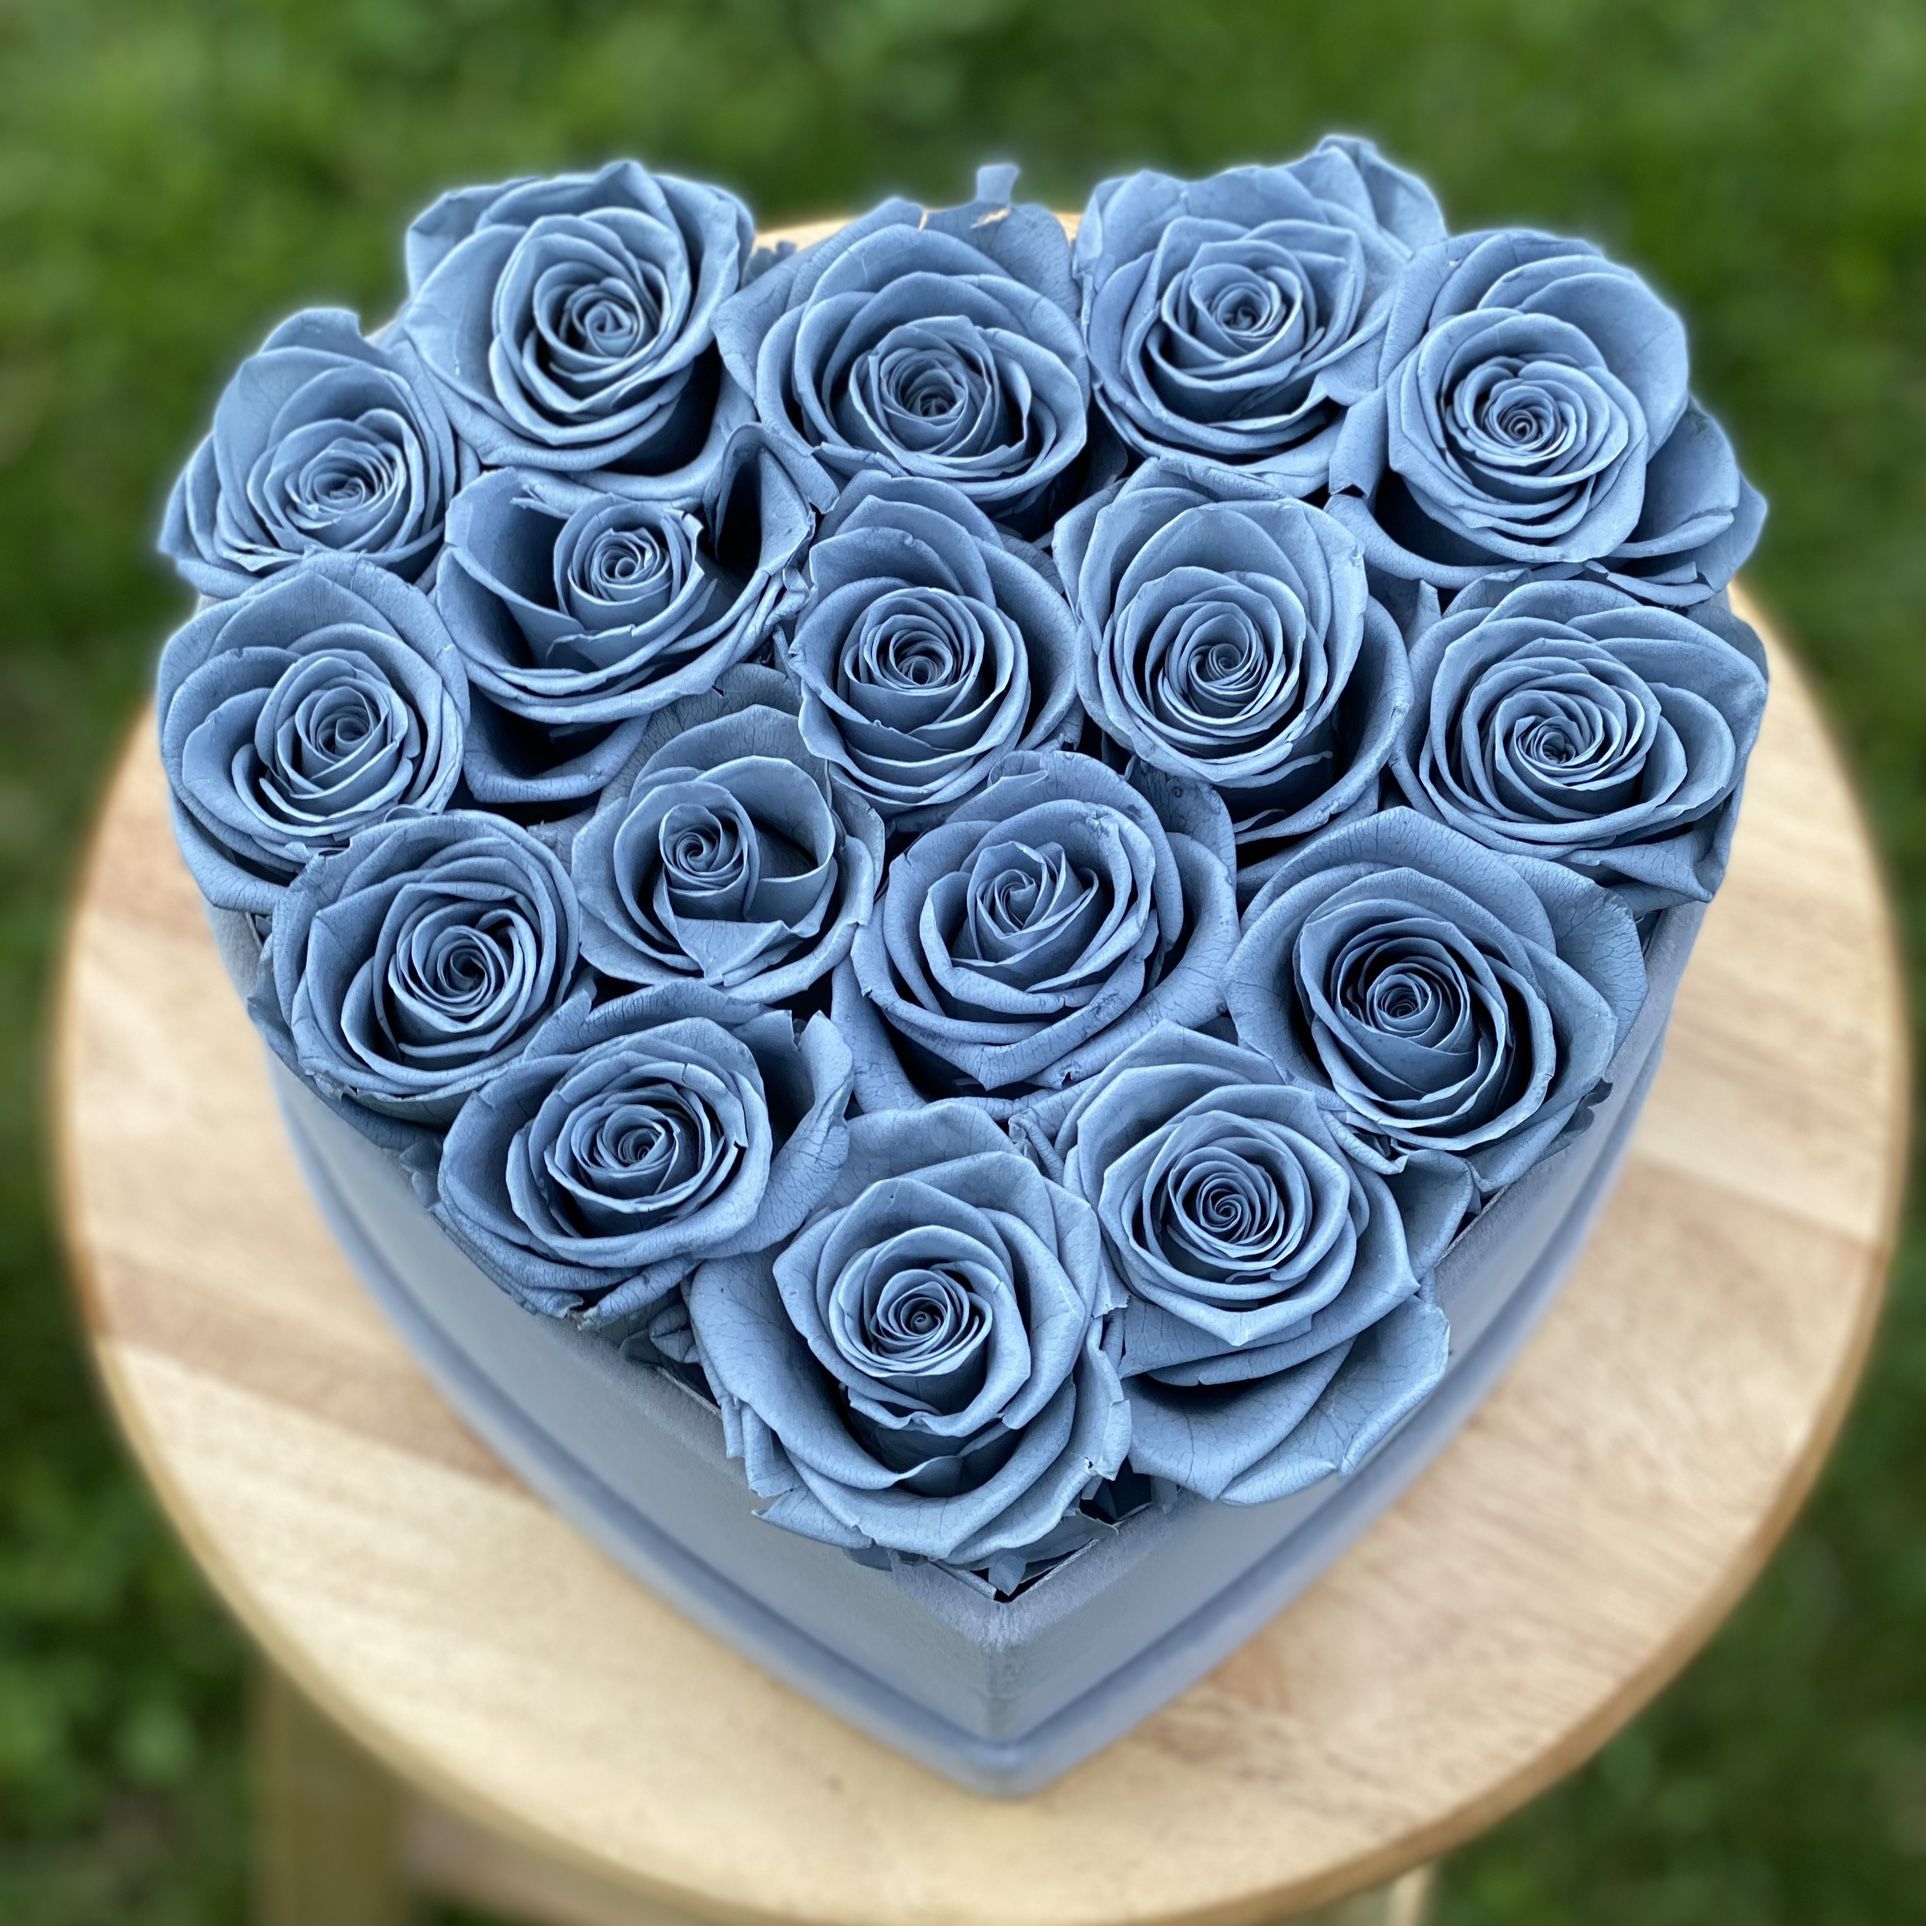 Grey Velvet Heart Shape Eternal Box Roses birthday prom Gift Real Preserved Flowers Long Lasting present Bday anniversary immortal roses 